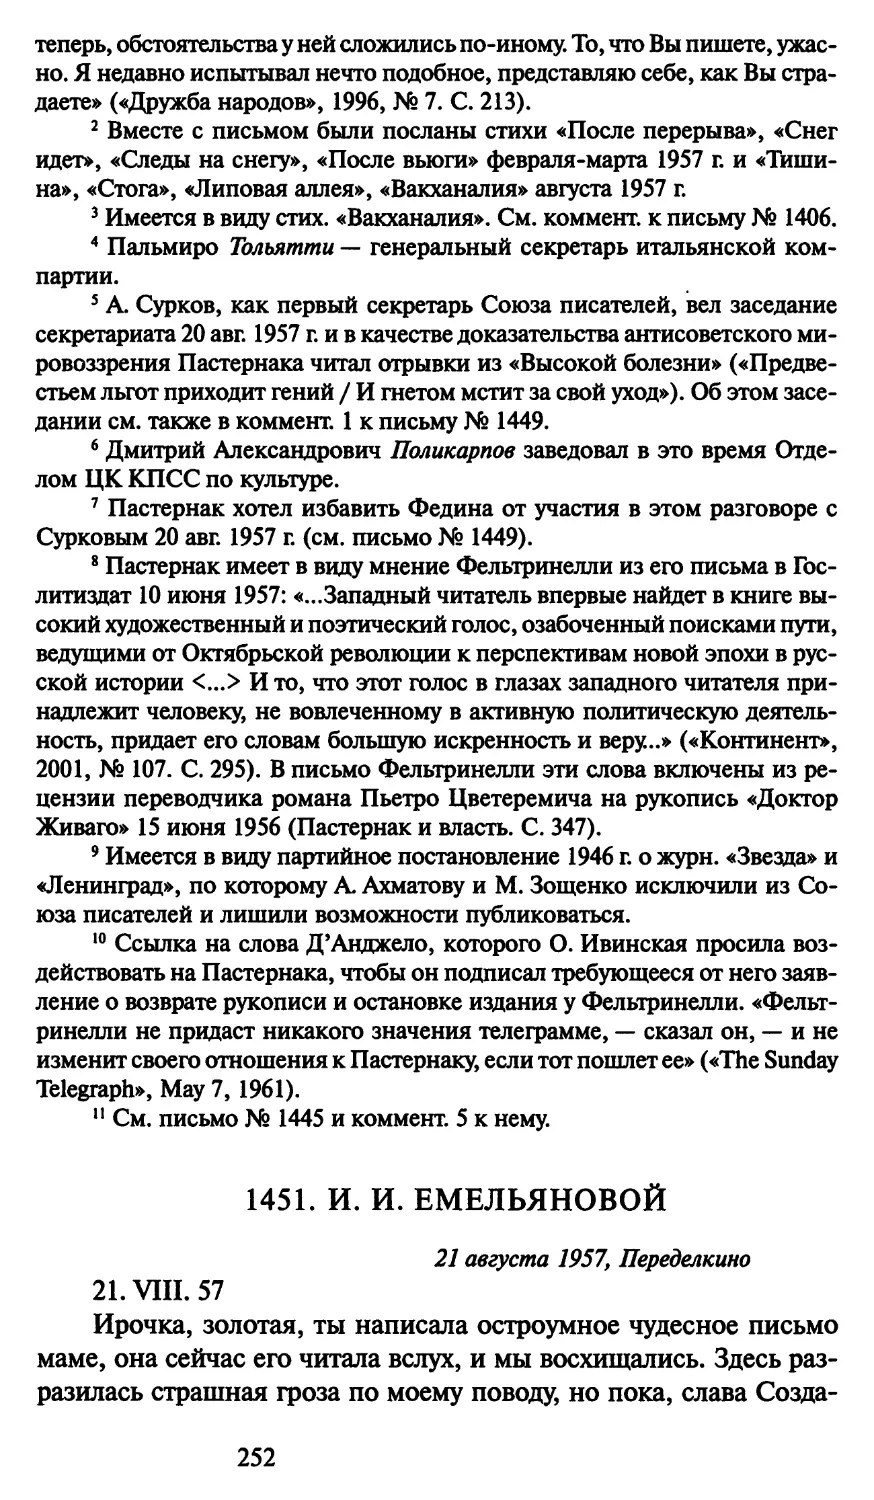 1451. И. И. Емельяновой 21 августа 1957